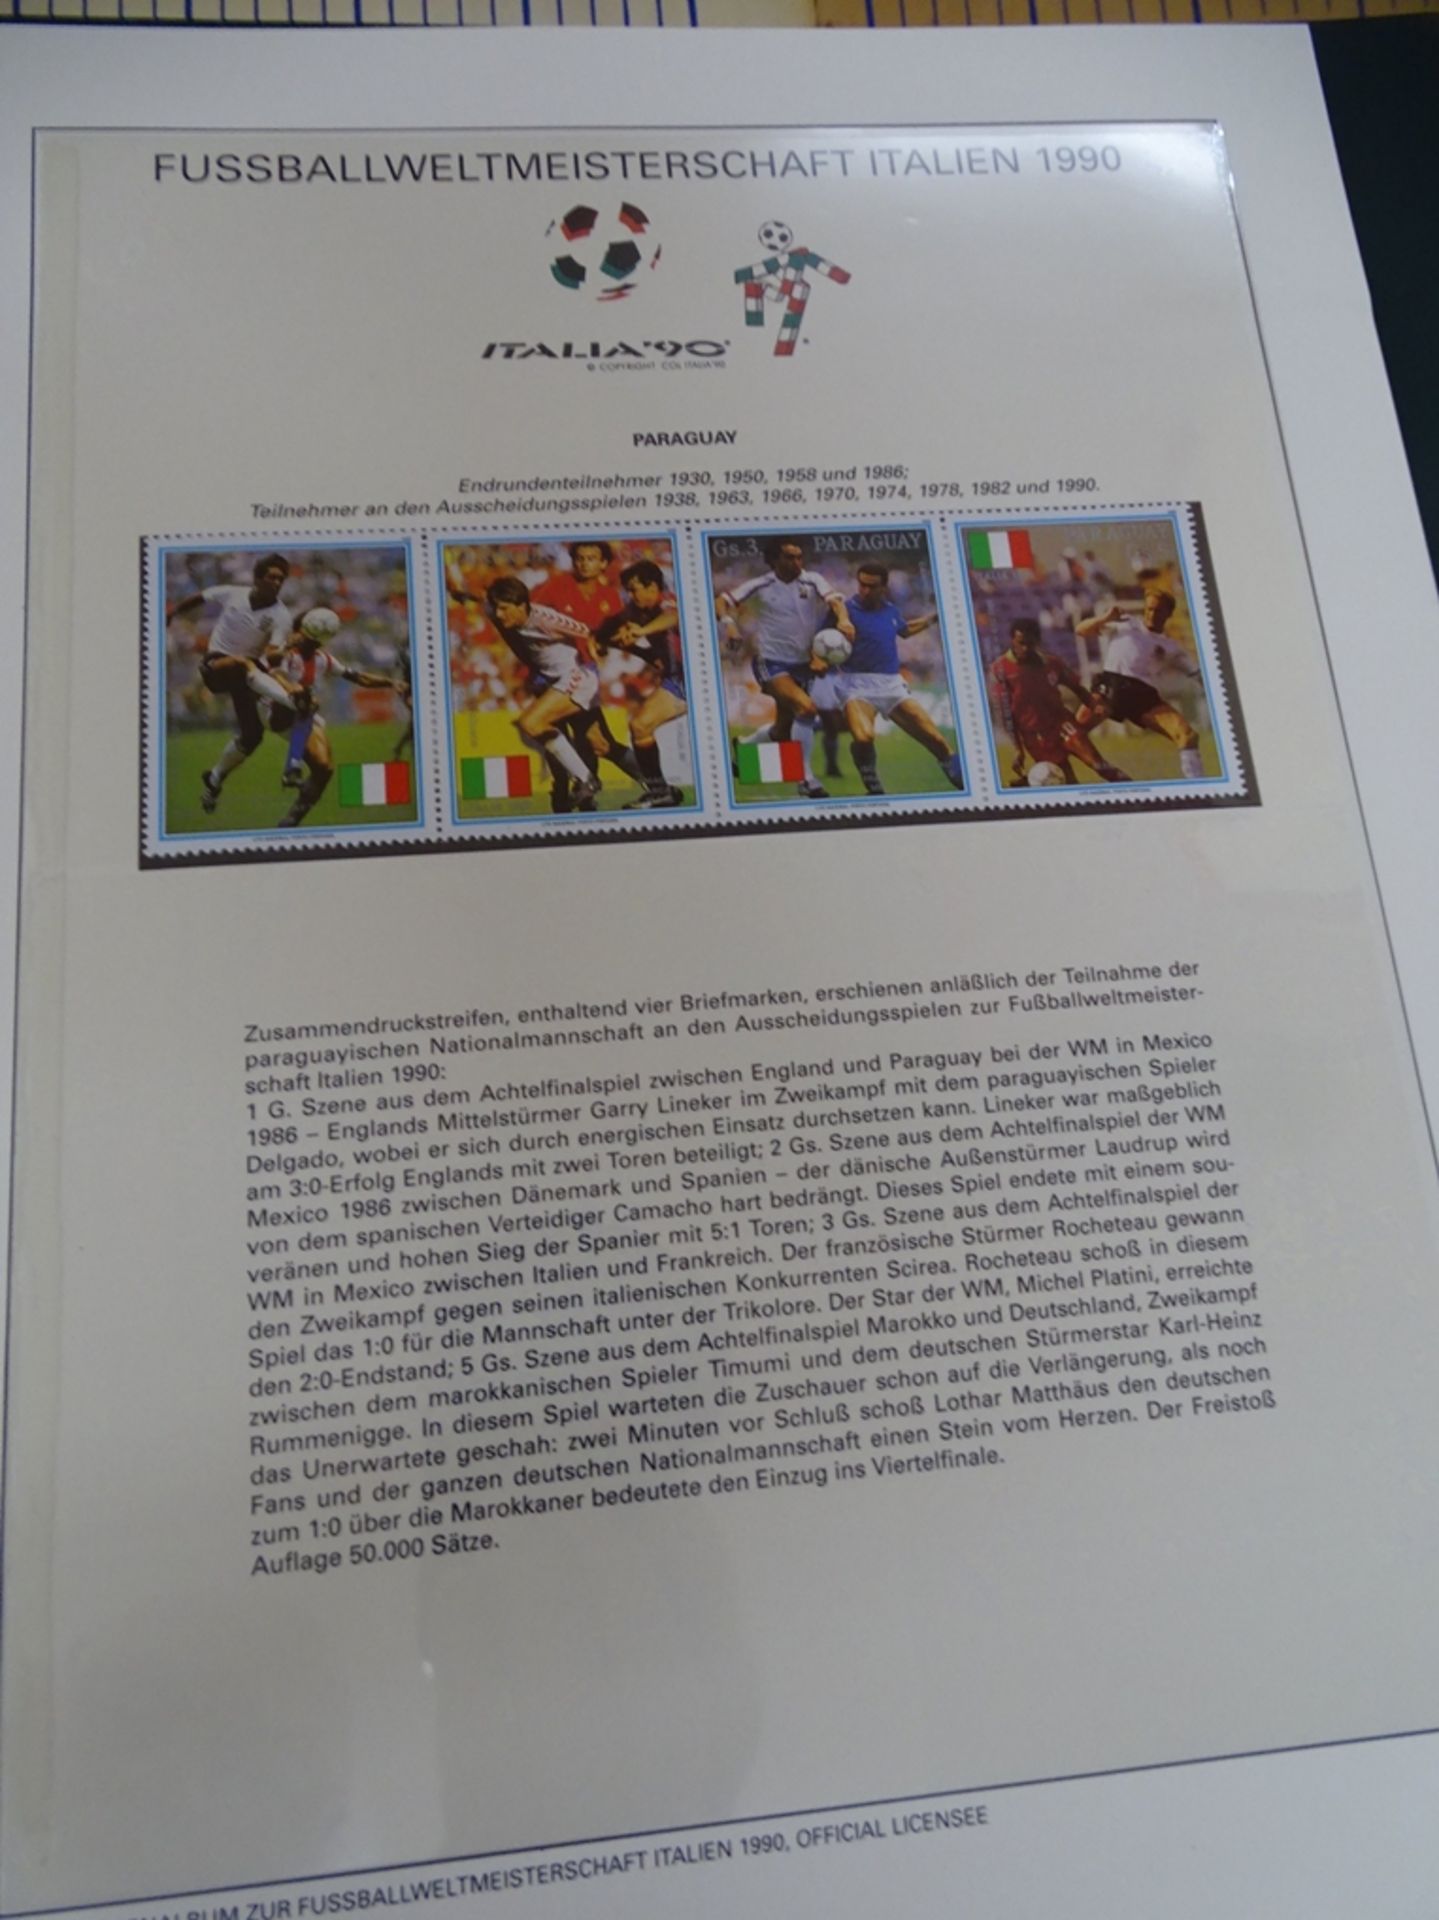 4x lomplette Linbder Ordner  "Italia 90" Briefmarkenalbum zur Fussball- Weltmeisterschaft, official - Bild 13 aus 13